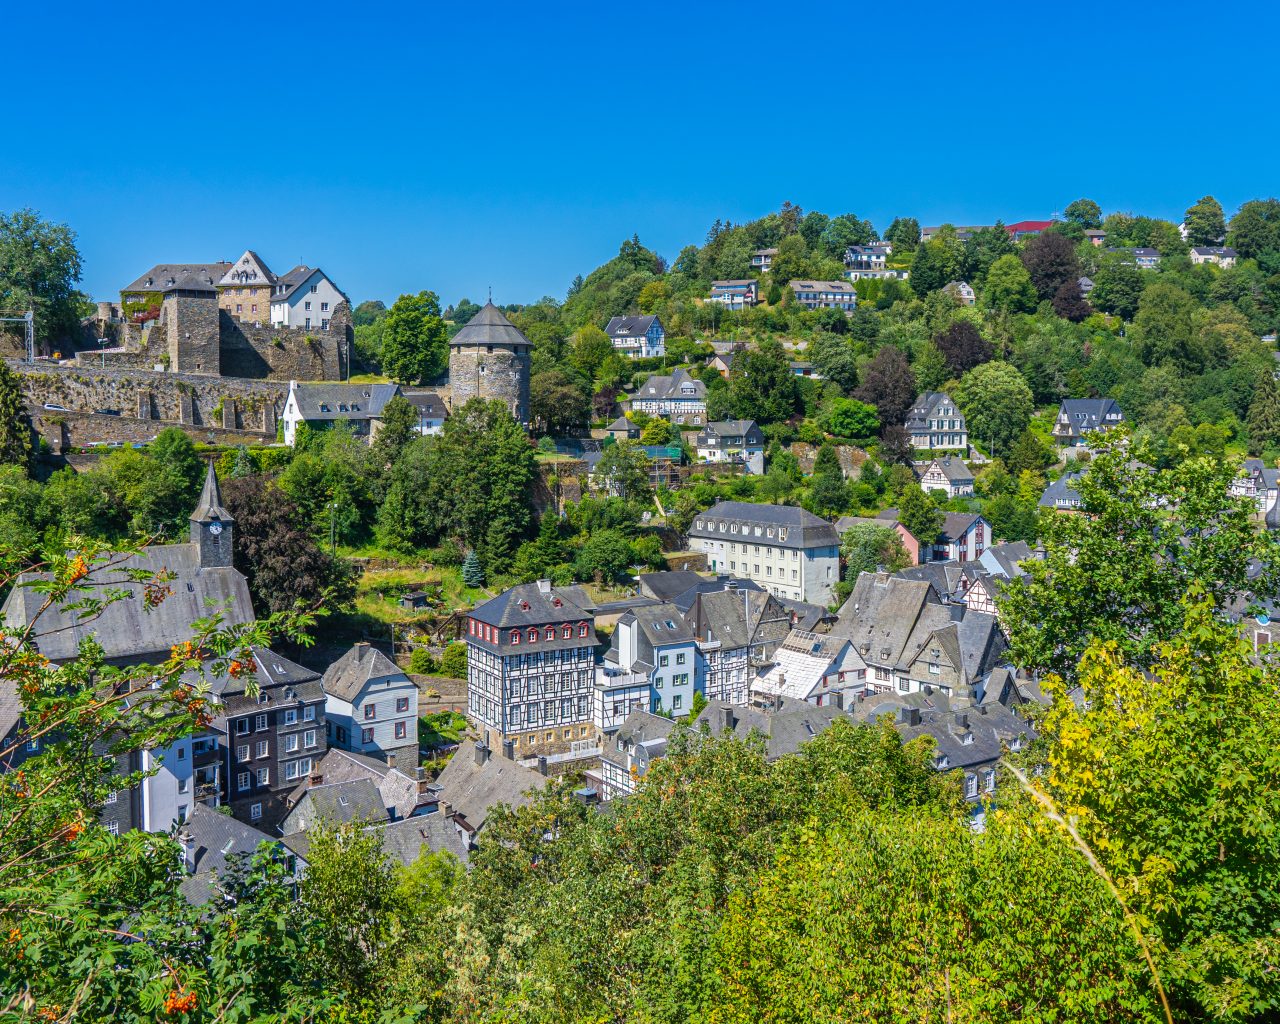 Wandelen-in-Monschau-uitzichtpunt-over-dorp